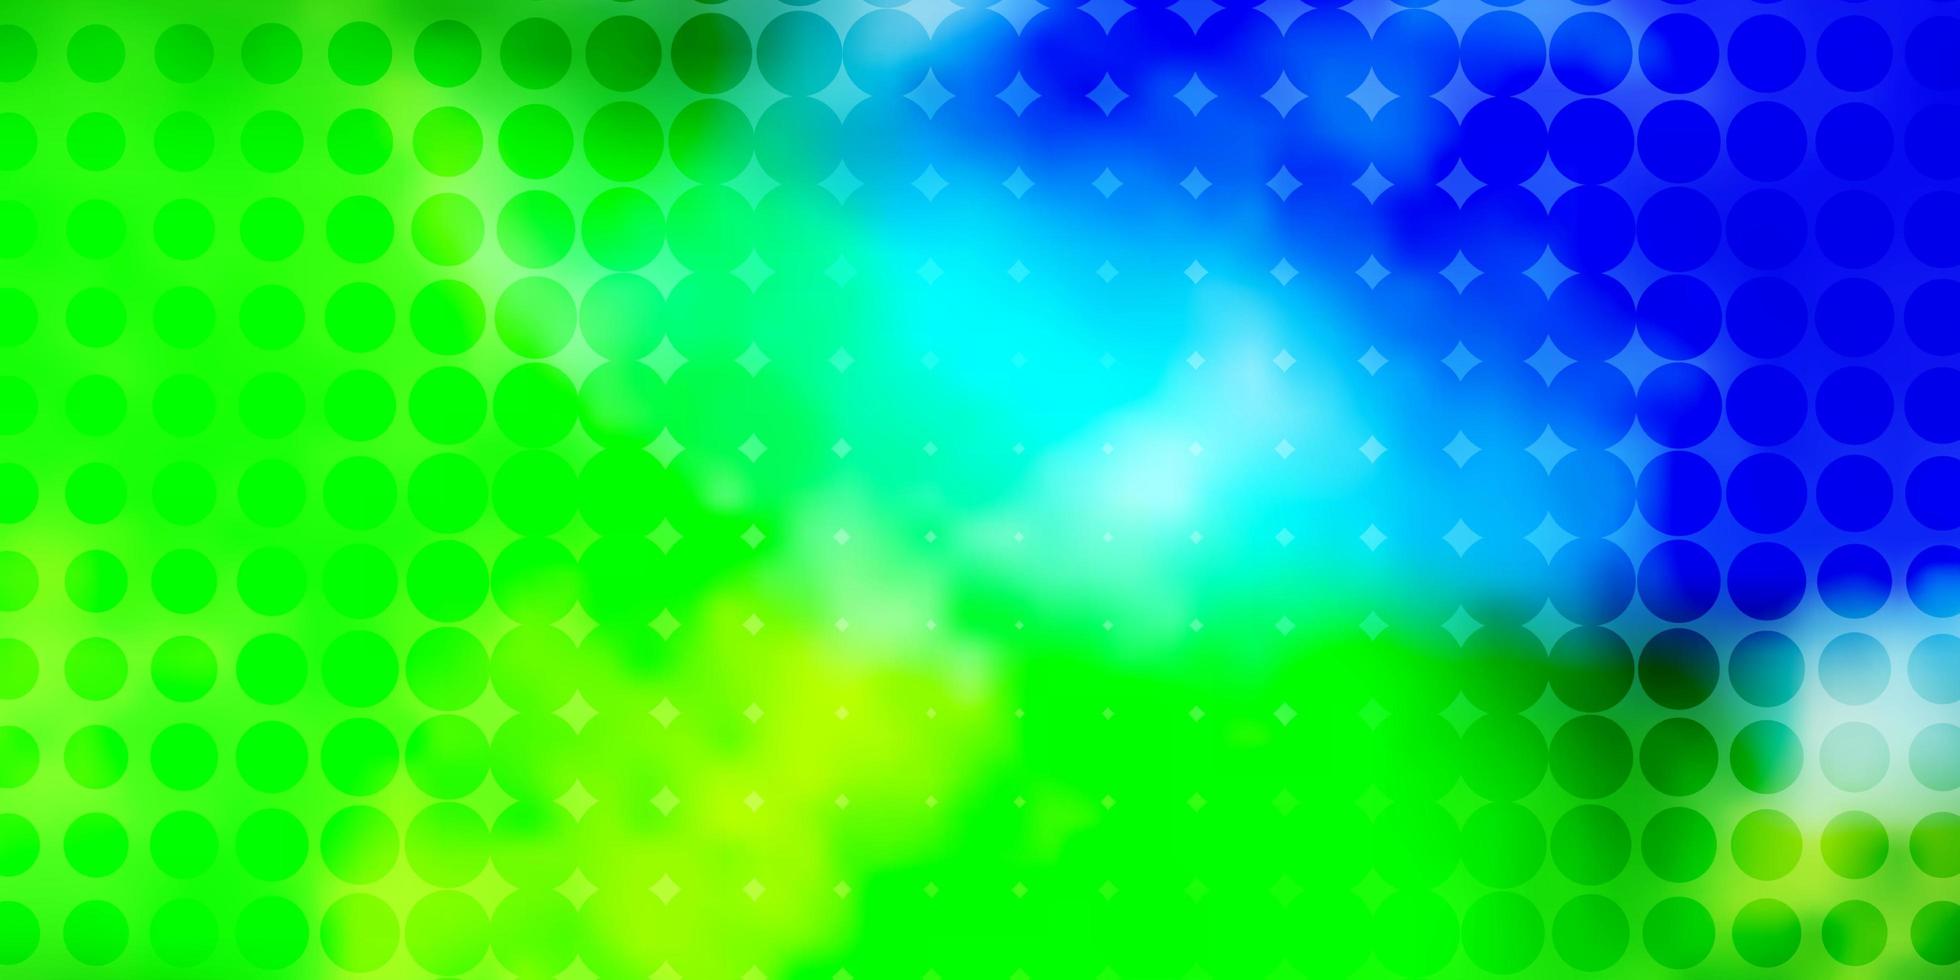 Padrão de vetor verde azul claro com ilustração de esferas com conjunto de padrão de esferas abstratas coloridas brilhantes para sites